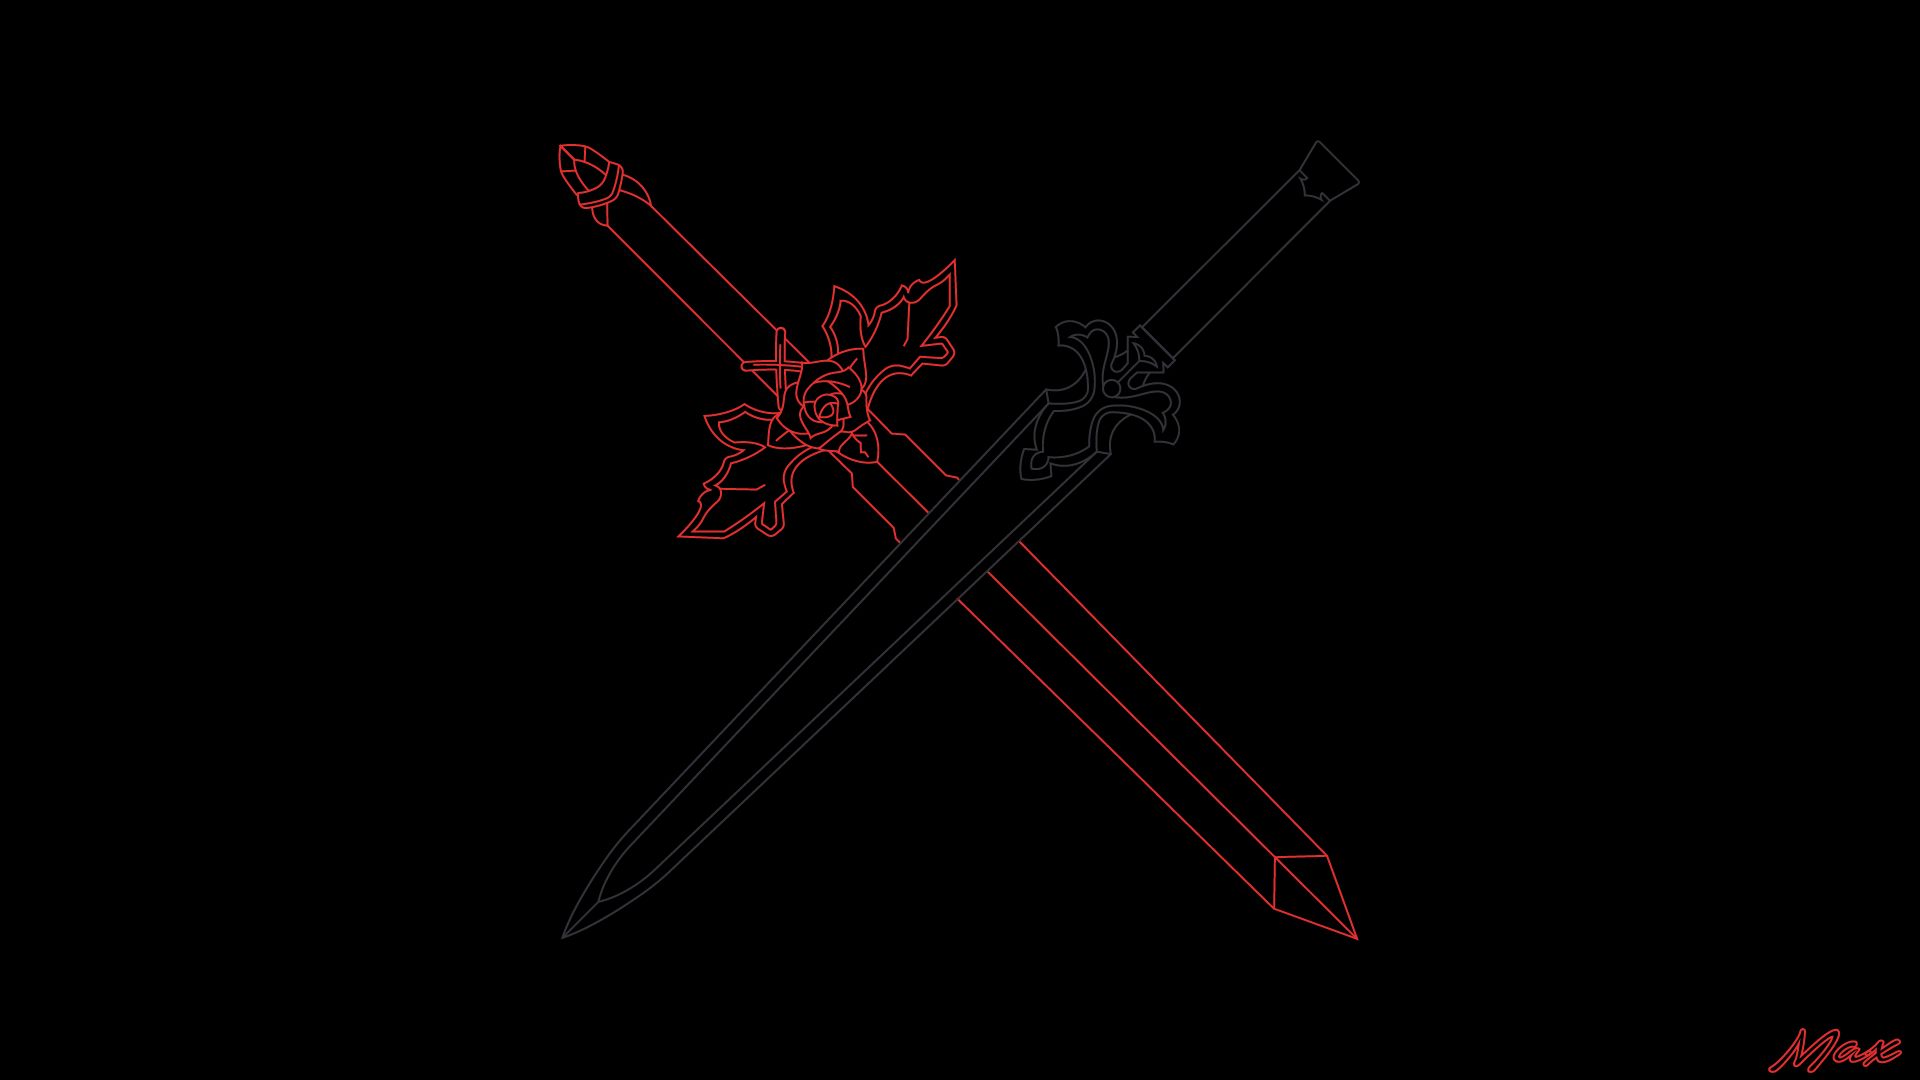 Descargar fondos de escritorio de Espada Rosa Roja (Sword Art Online) HD